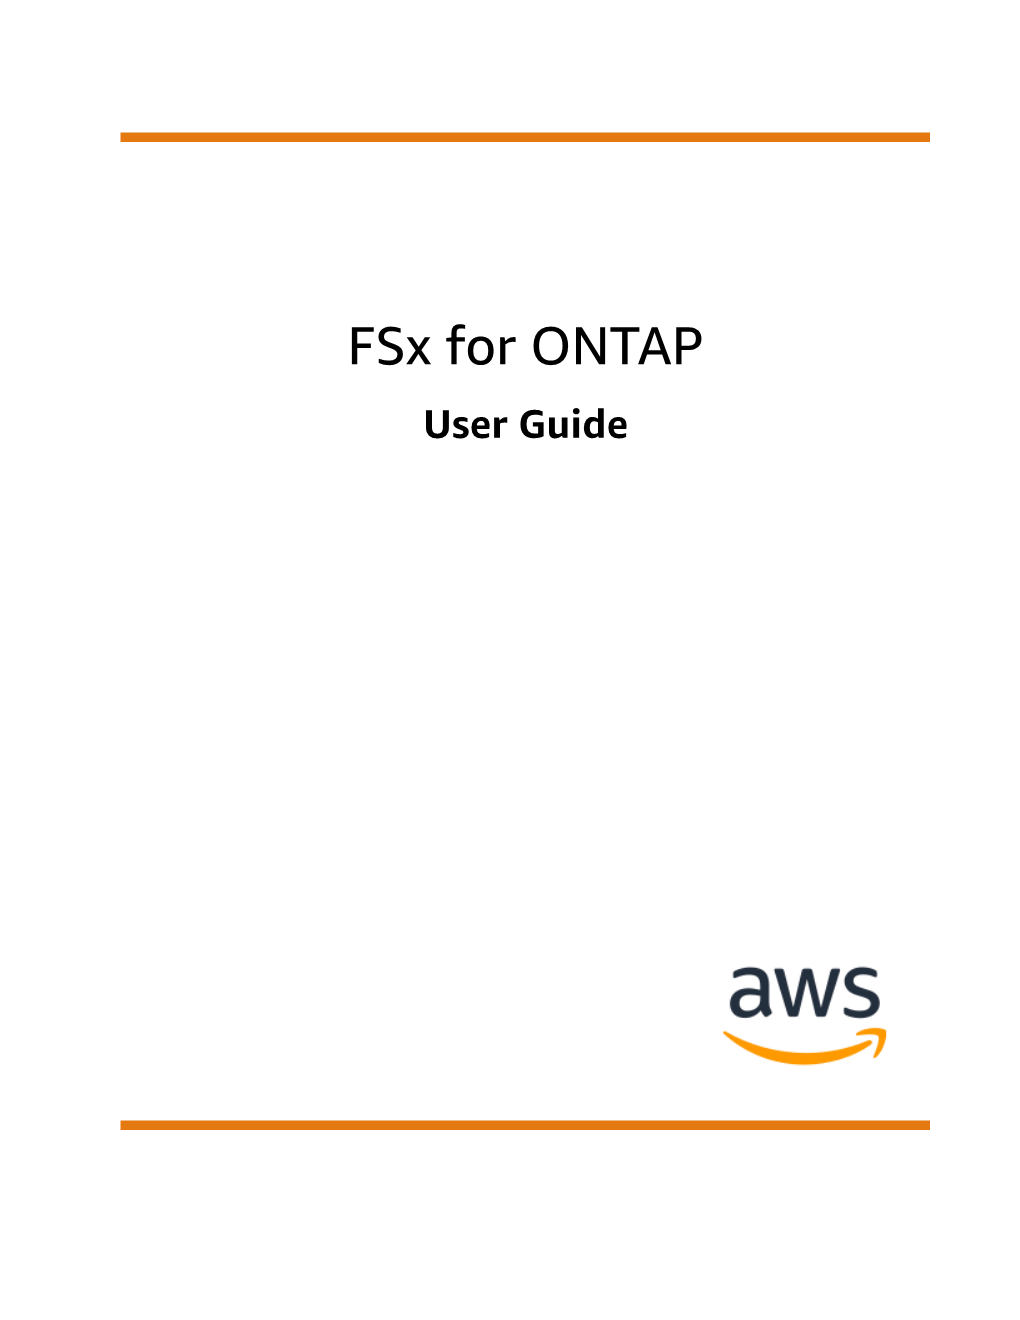 Fsx for ONTAP User Guide Fsx for ONTAP User Guide